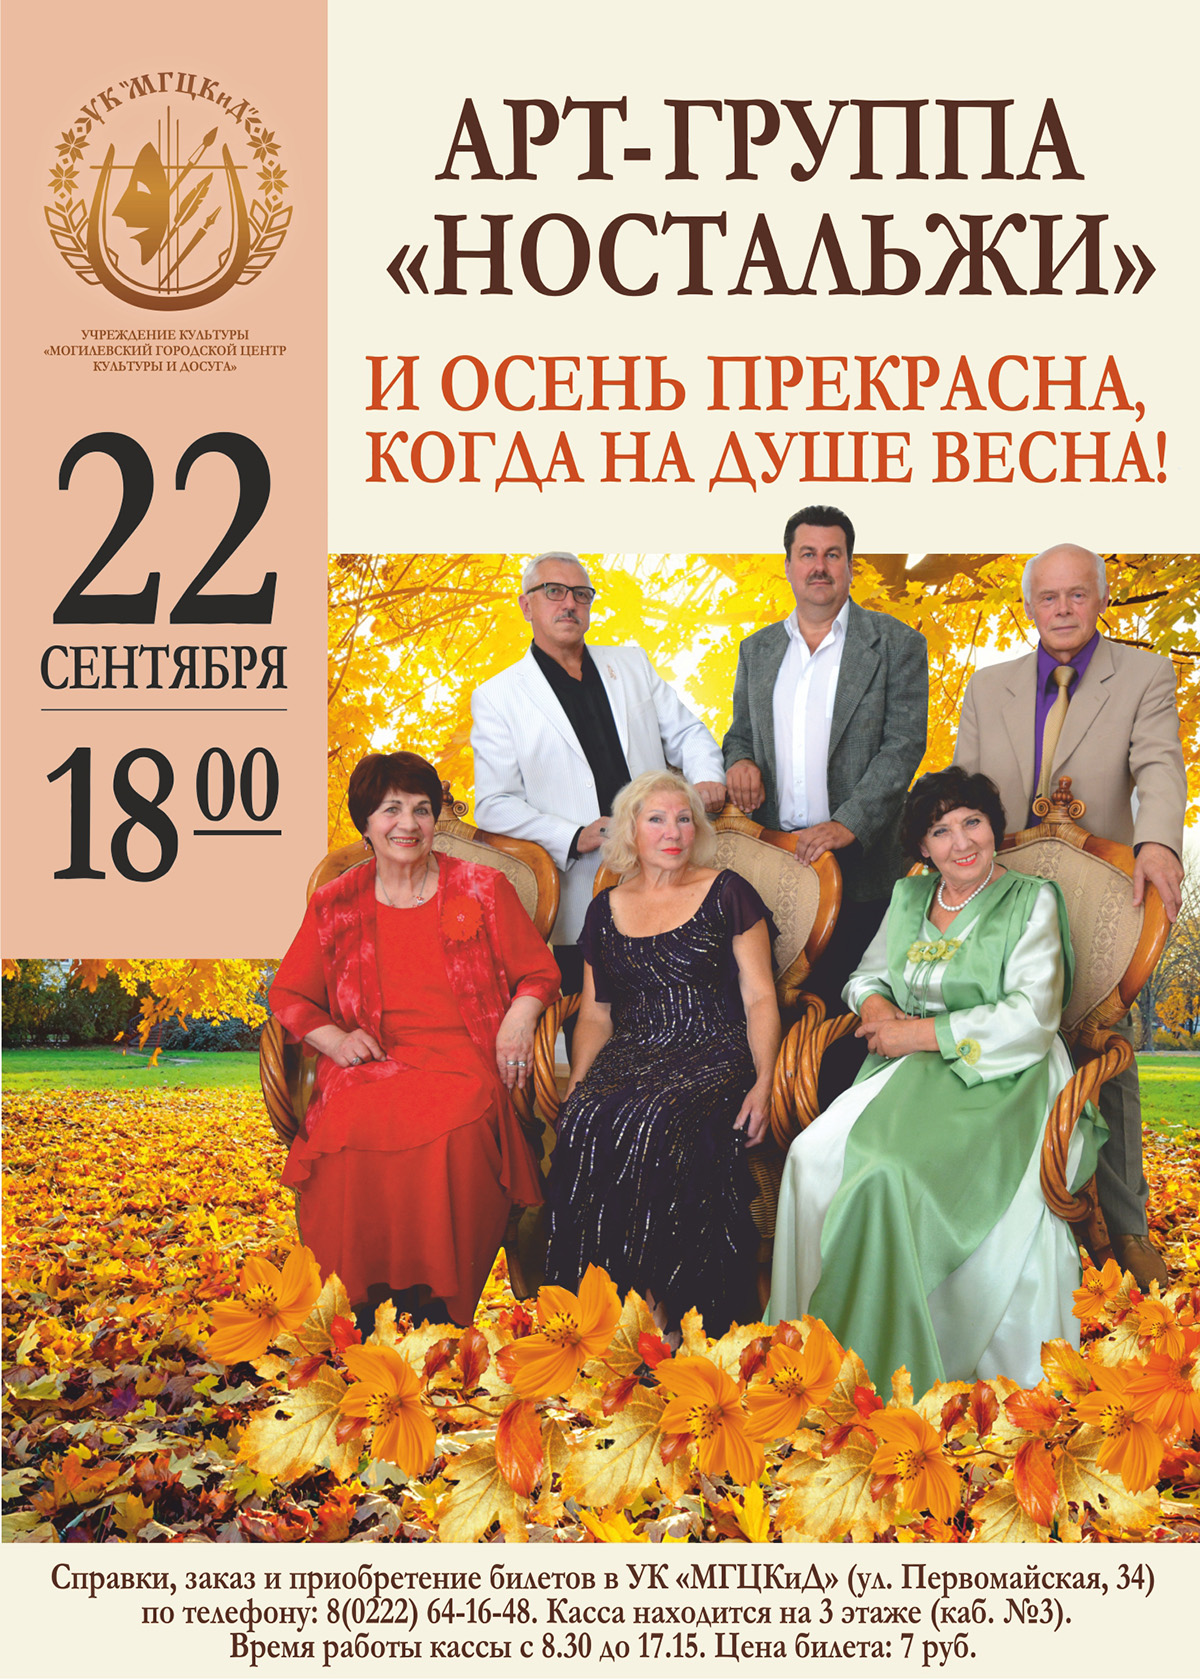 Арт-группа «Ностальжи» приглашает могилевчан на концерт 22 сентября